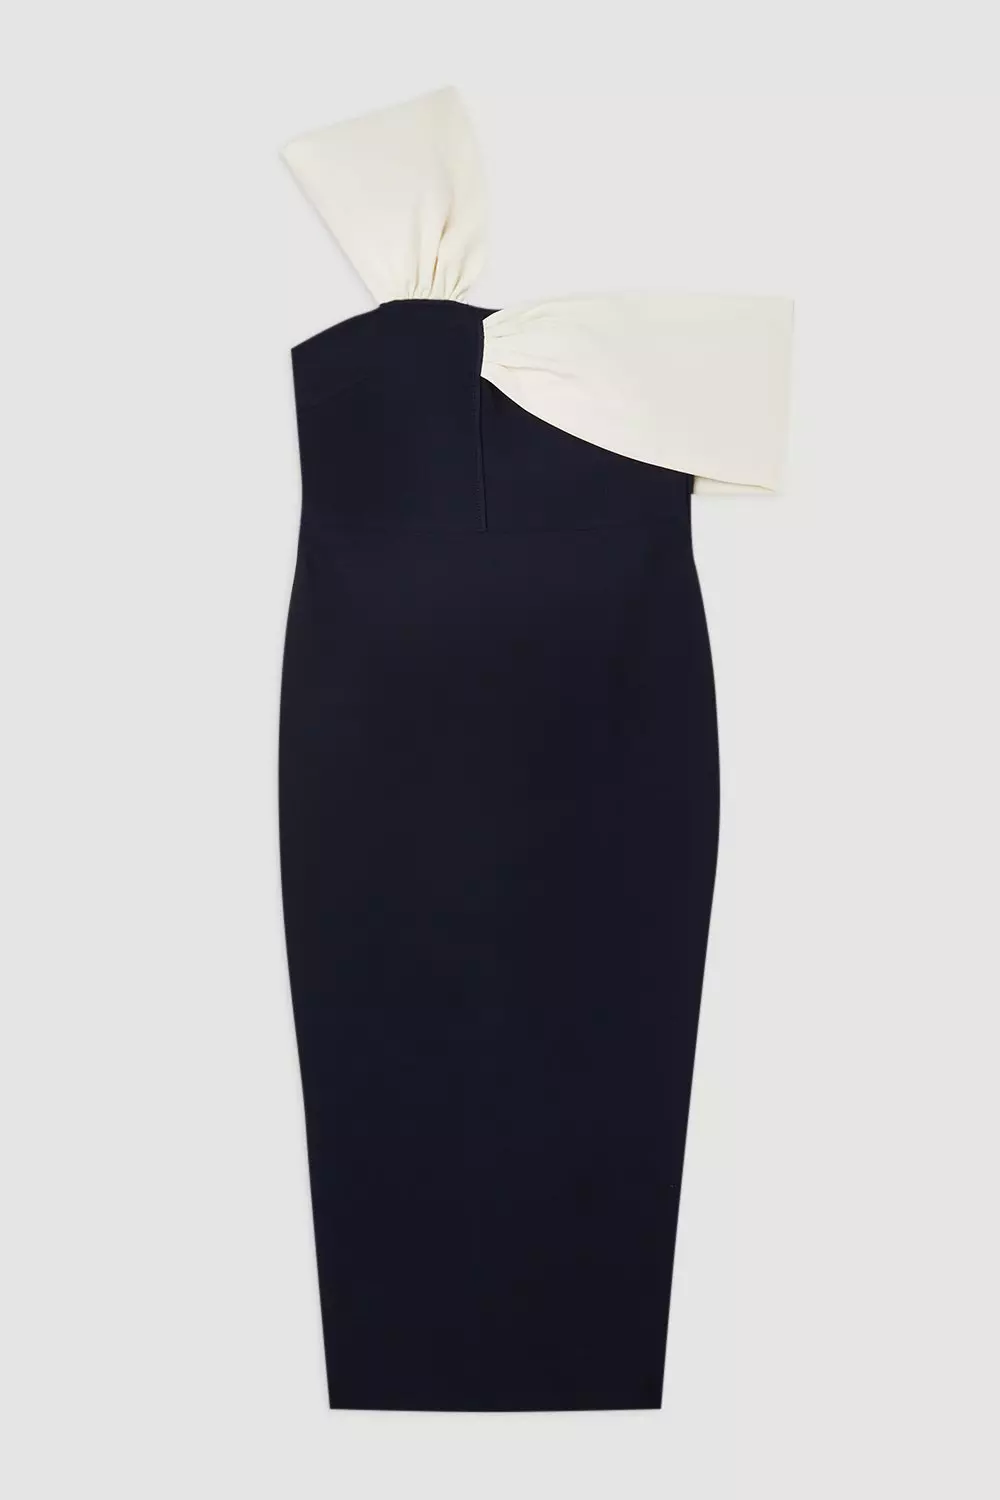 Plus Size Figure Form Bandage Knit Asymmetric Strap Midi Dress 